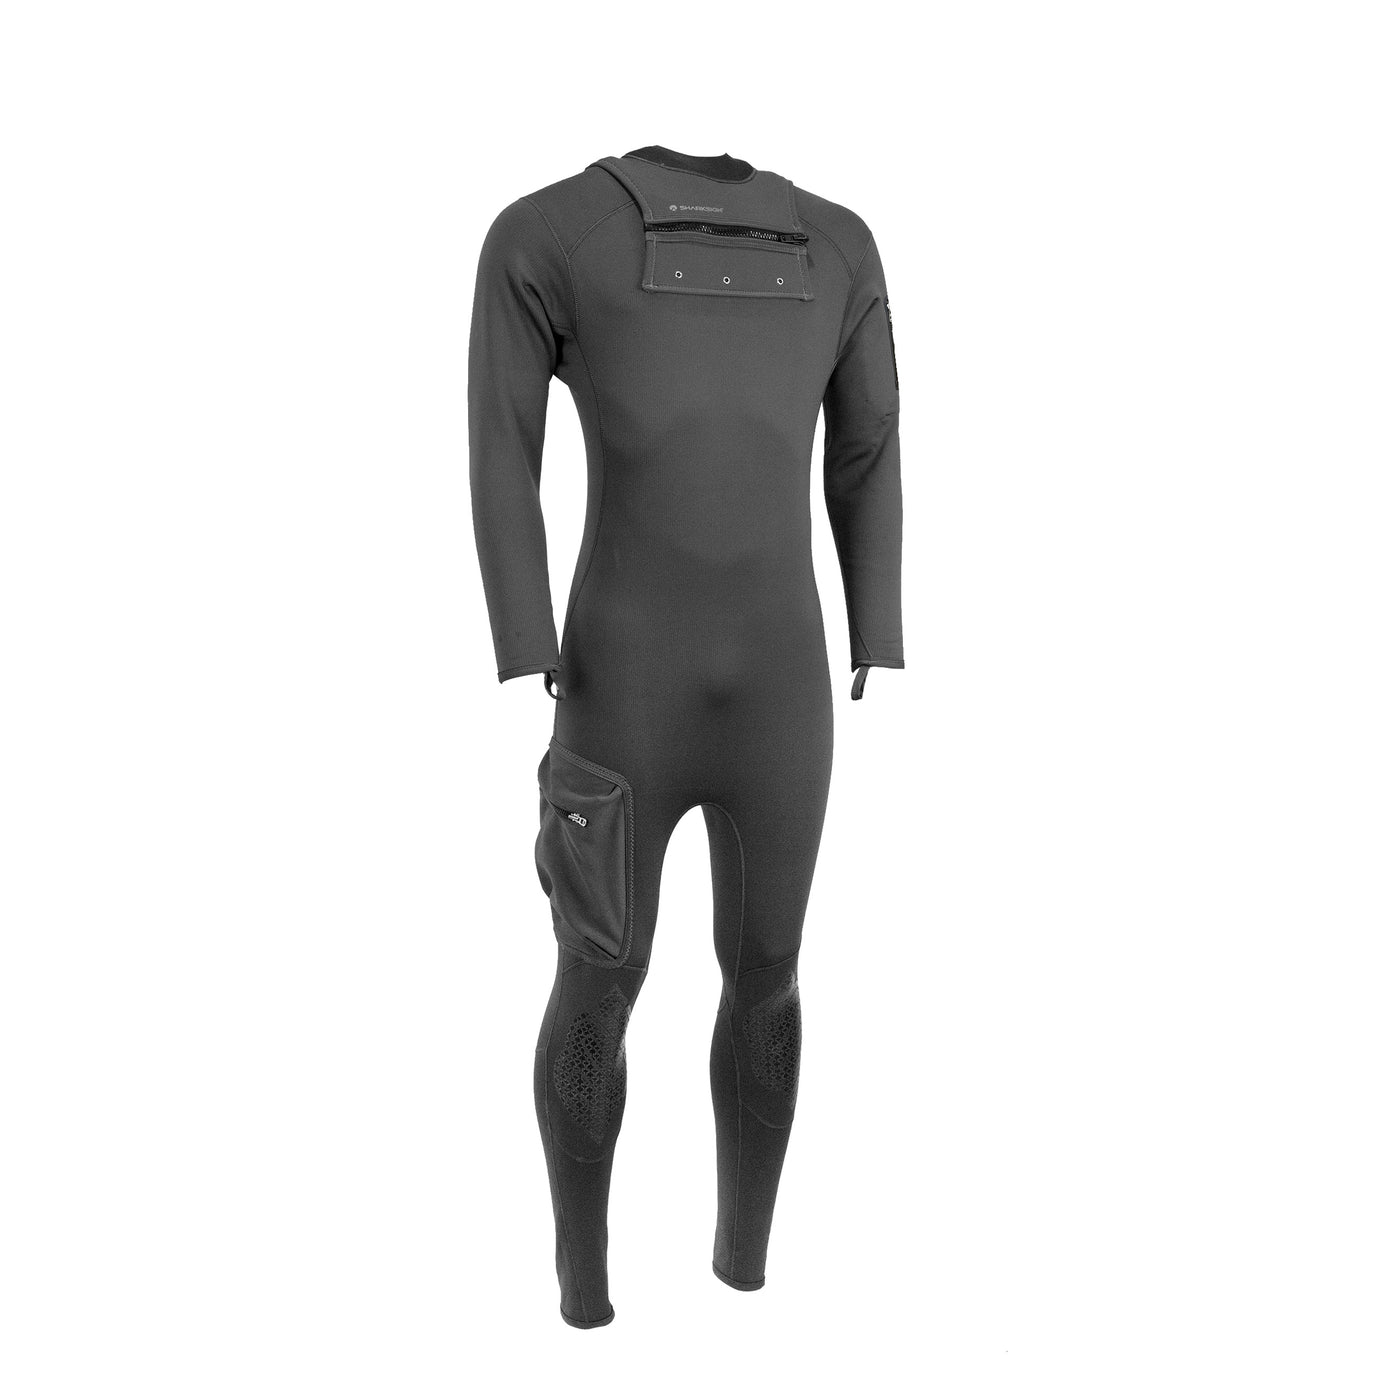 Titanium 2 Multi-Sport Suit (Male)